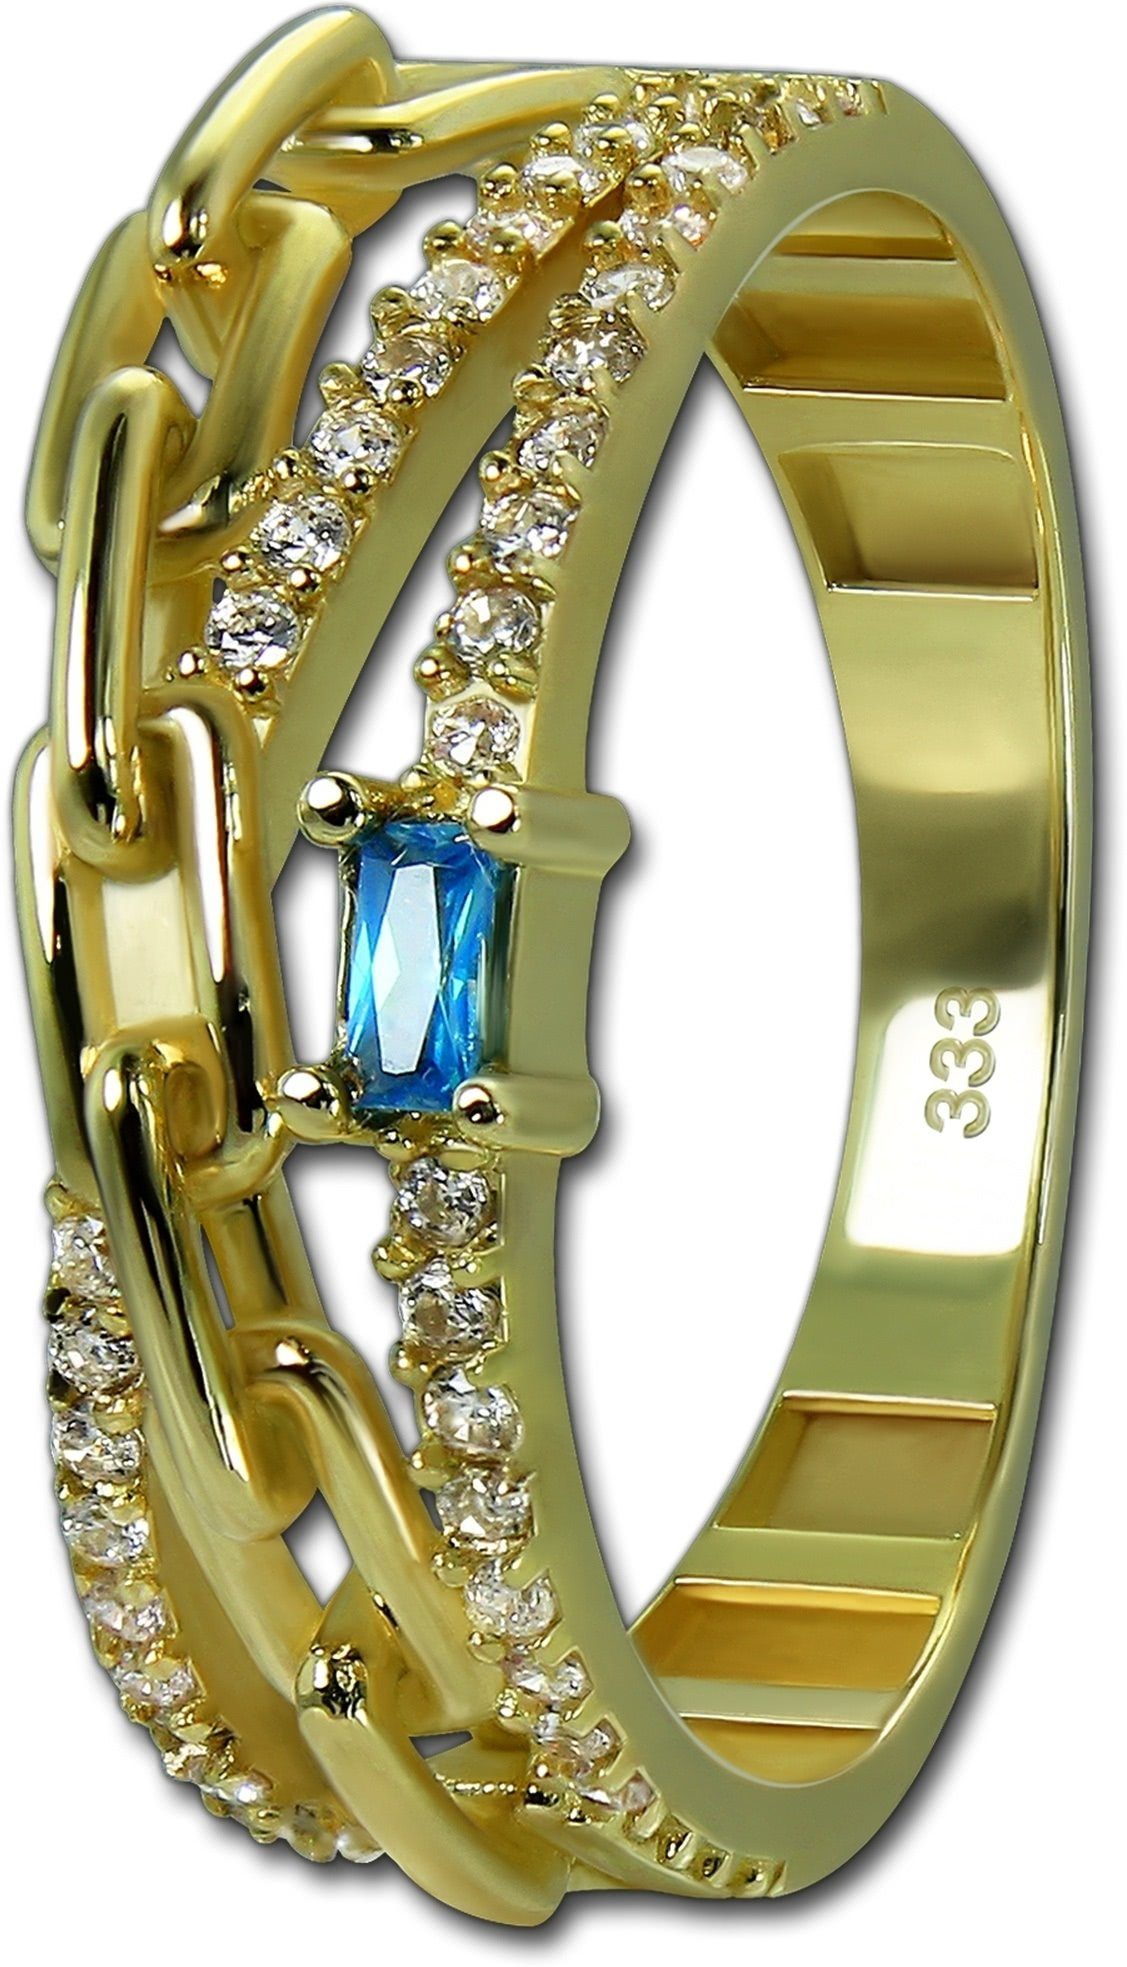 GoldDream Ring Ring Gr.58 333er hellblau Glamour Damen GoldDream Gelbgold Echtgold, gold, weiß, Goldring (Fingerring), Glamour Gold